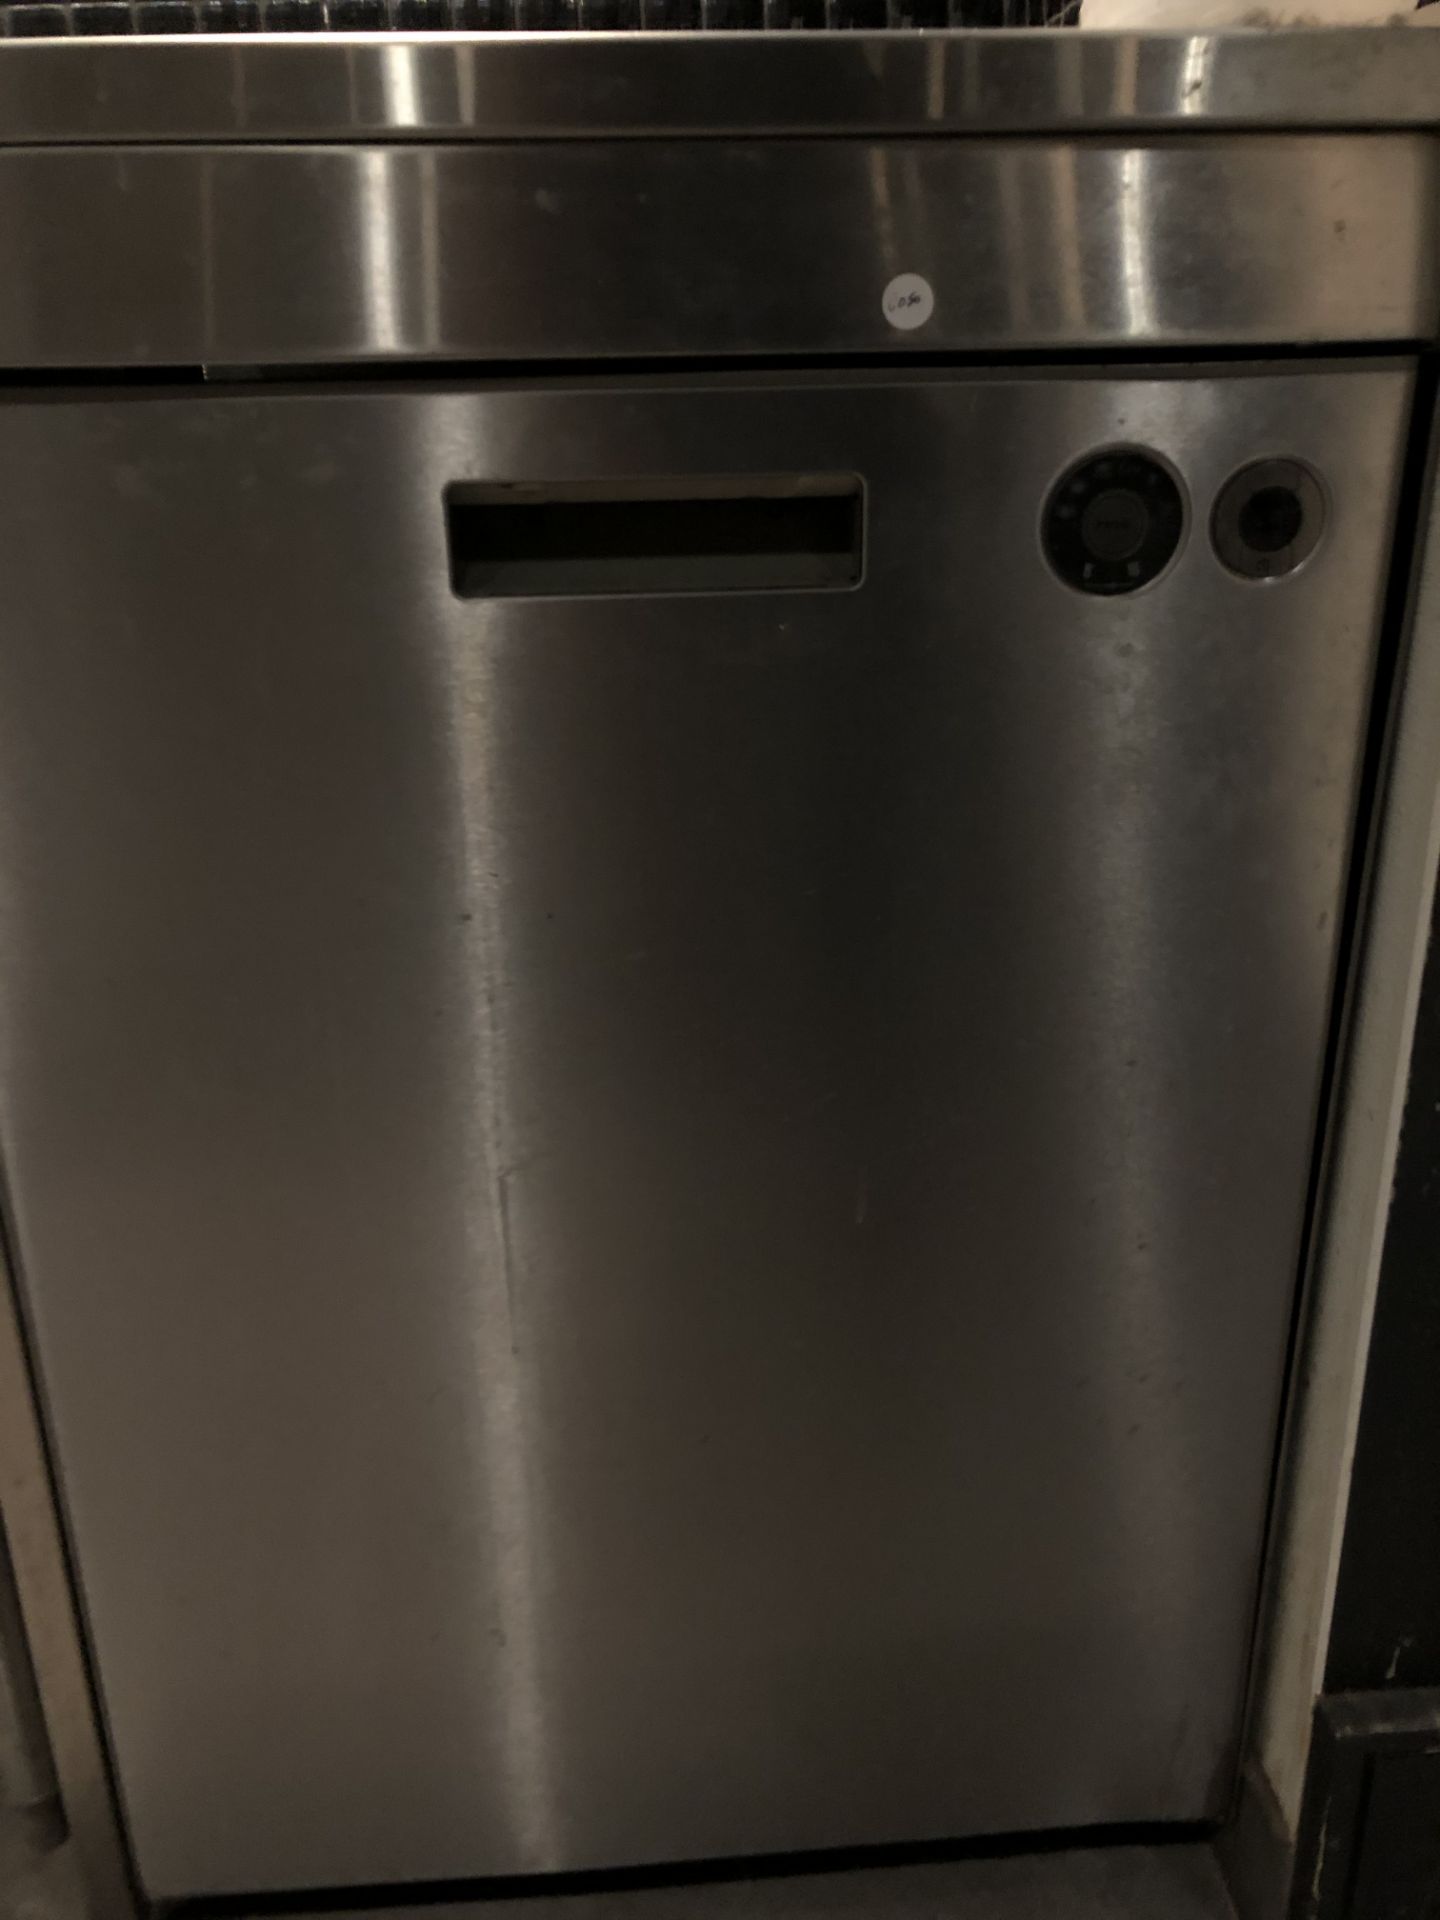 ASKO Model- D5434 Dishwasher (C050)